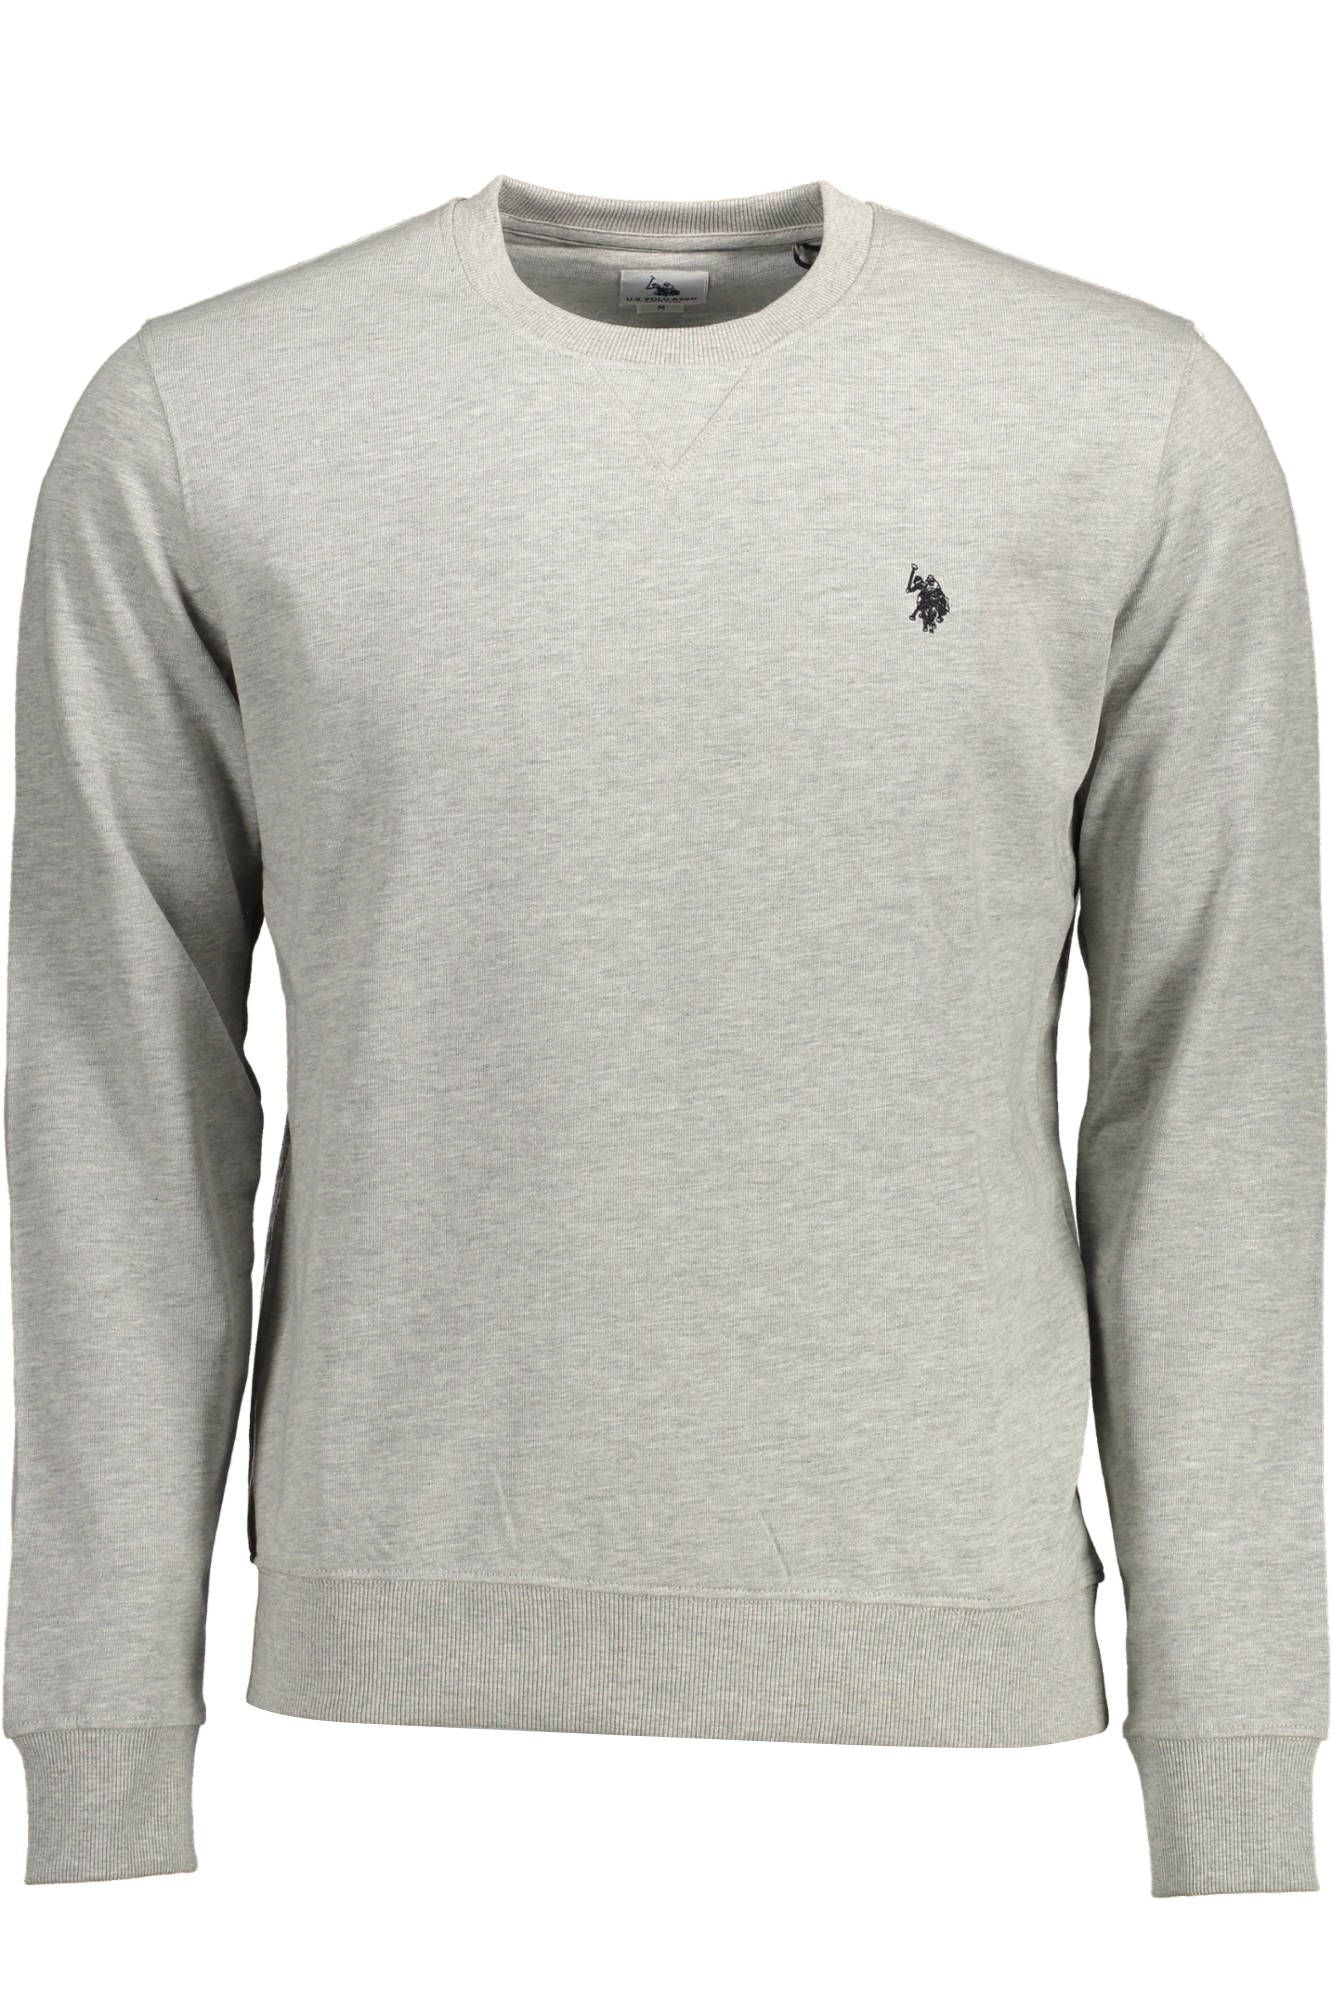 Sleek Gray Cotton Sweatshirt with Embroidery